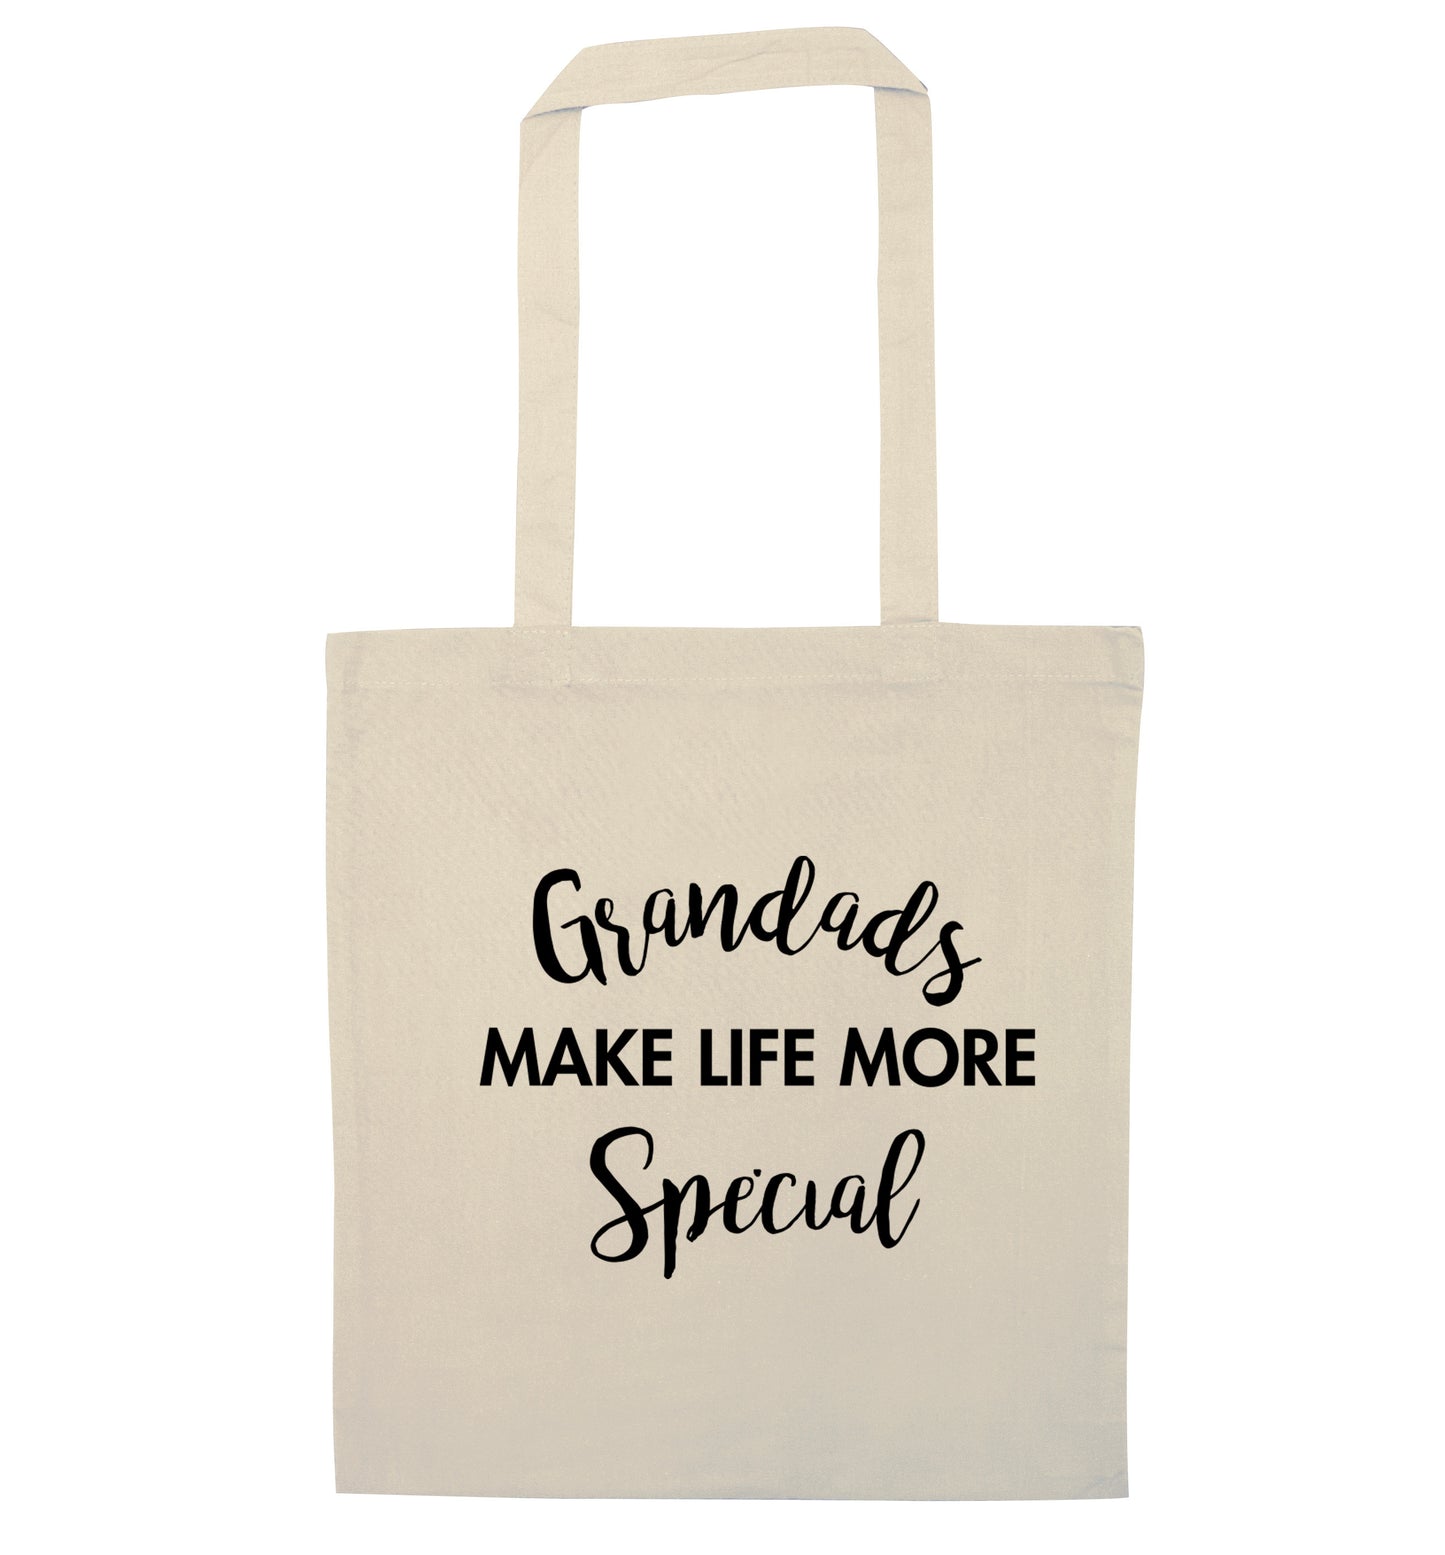 Grandads make life more special natural tote bag